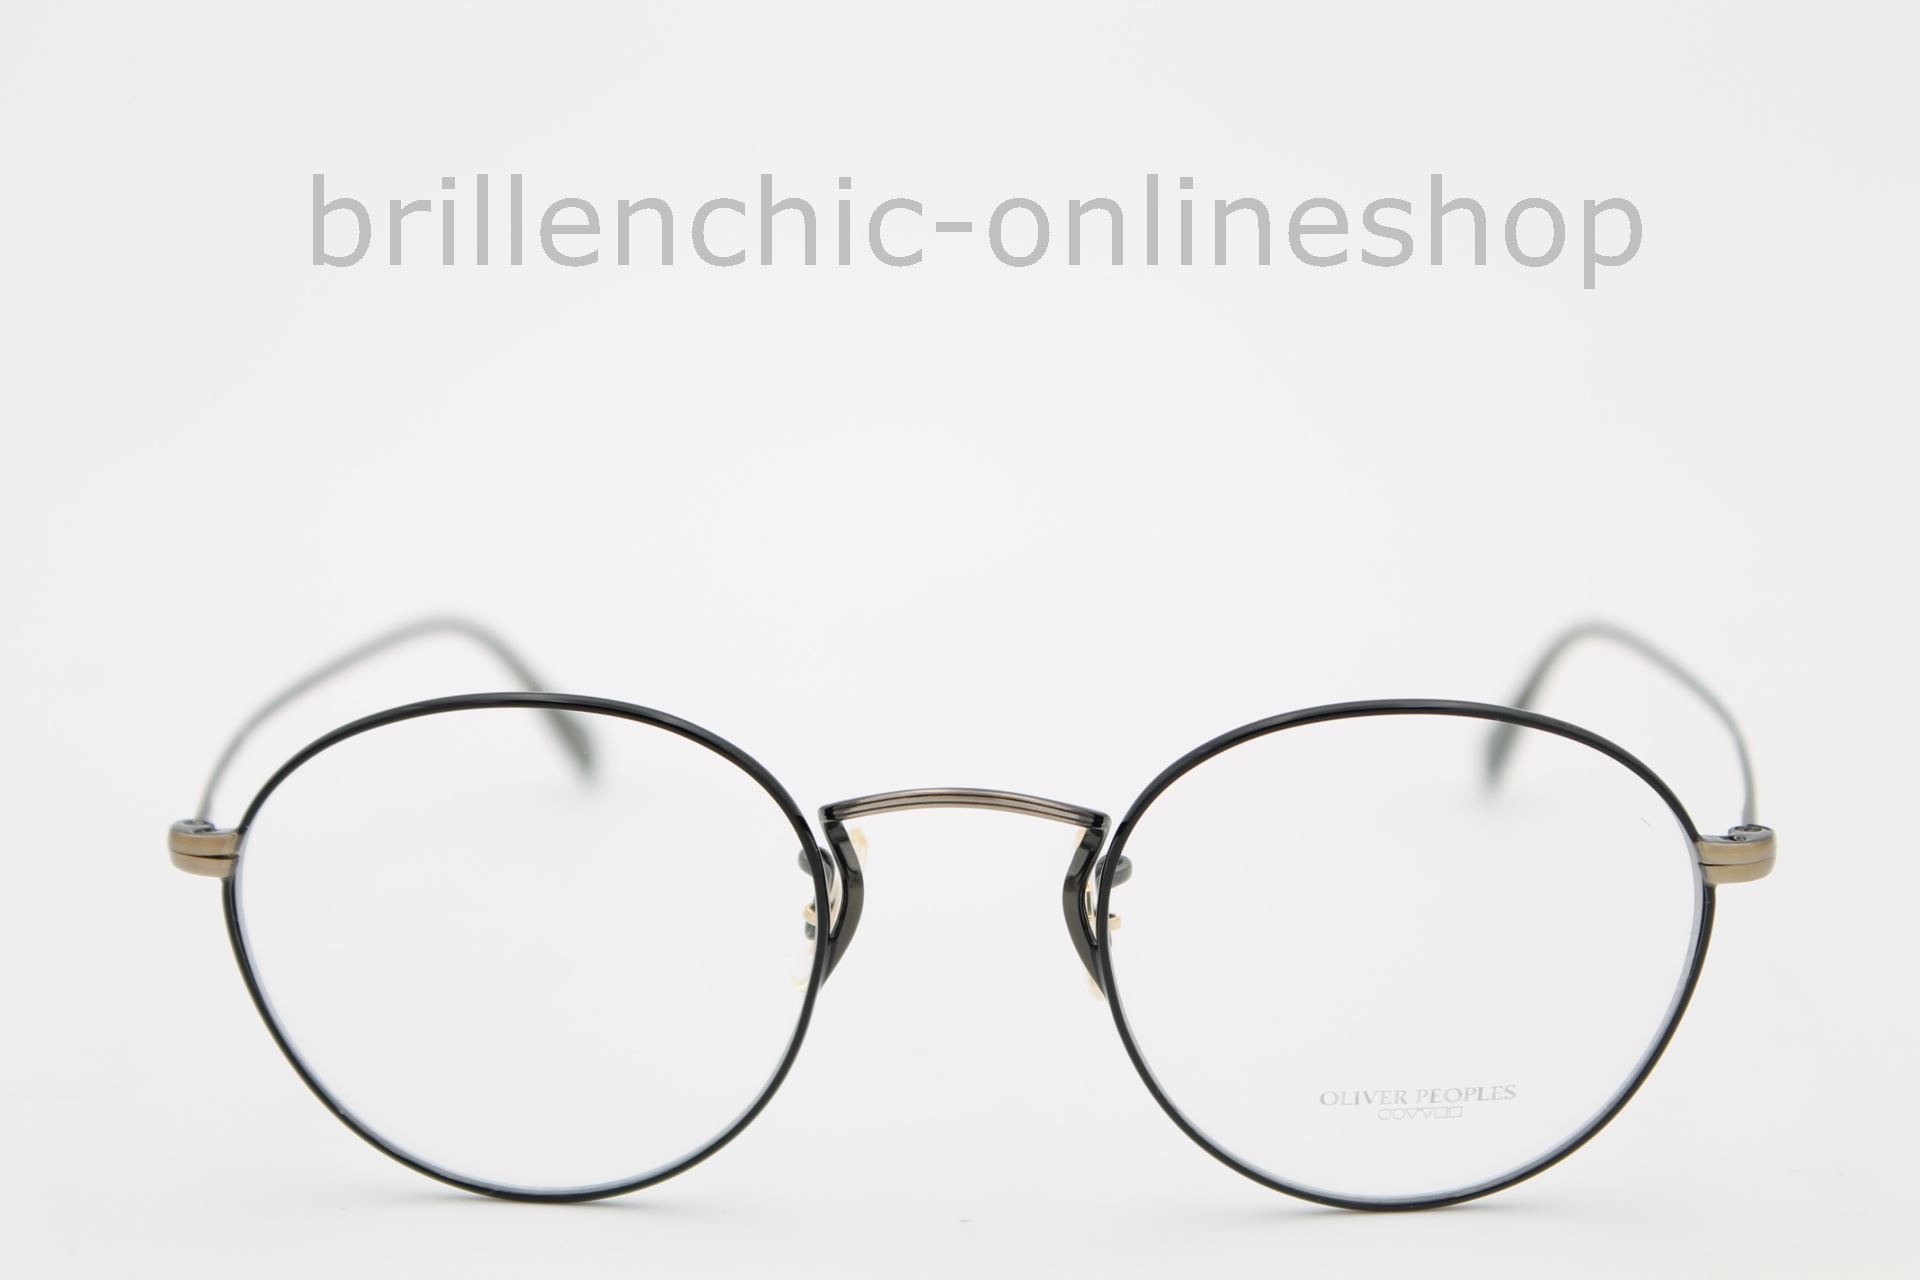 Brillenchic - onlineshop Berlin Ihr starker Partner für exklusive Brillen  online kaufen/OLIVER PEOPLES COLERIDGE OV 1186 5296 exklusiv im  Brillenchic-Onlineshop